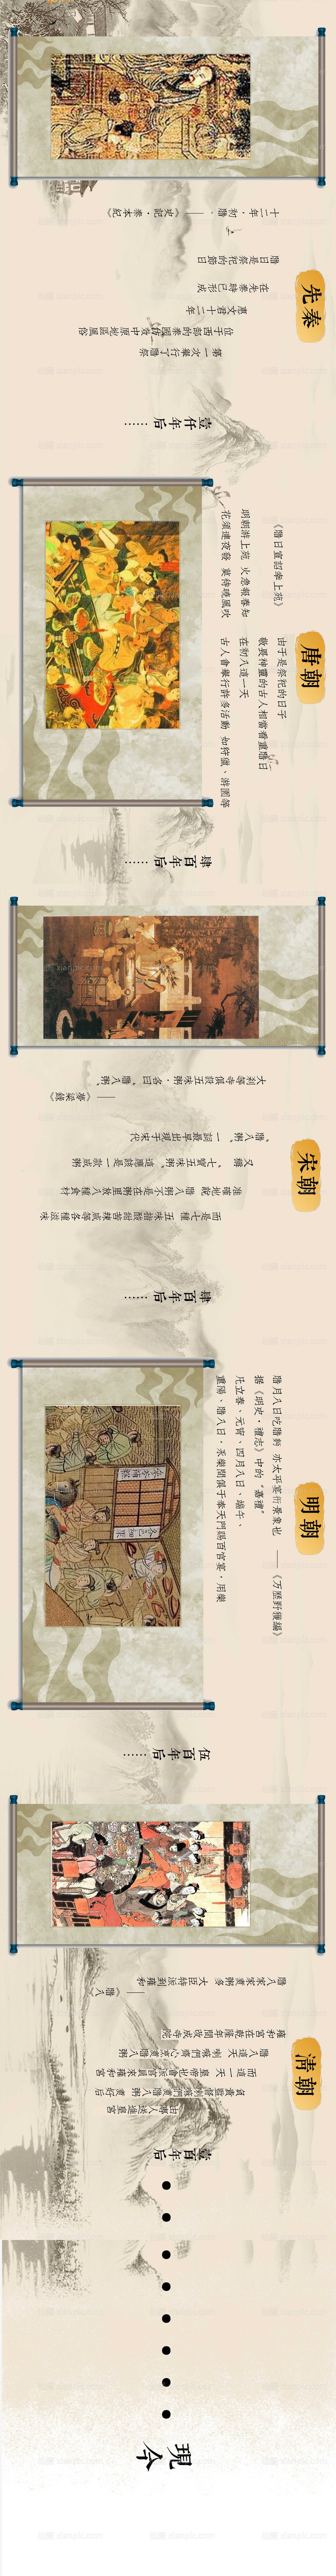 素材乐-腊八节古典画卷轴式长图